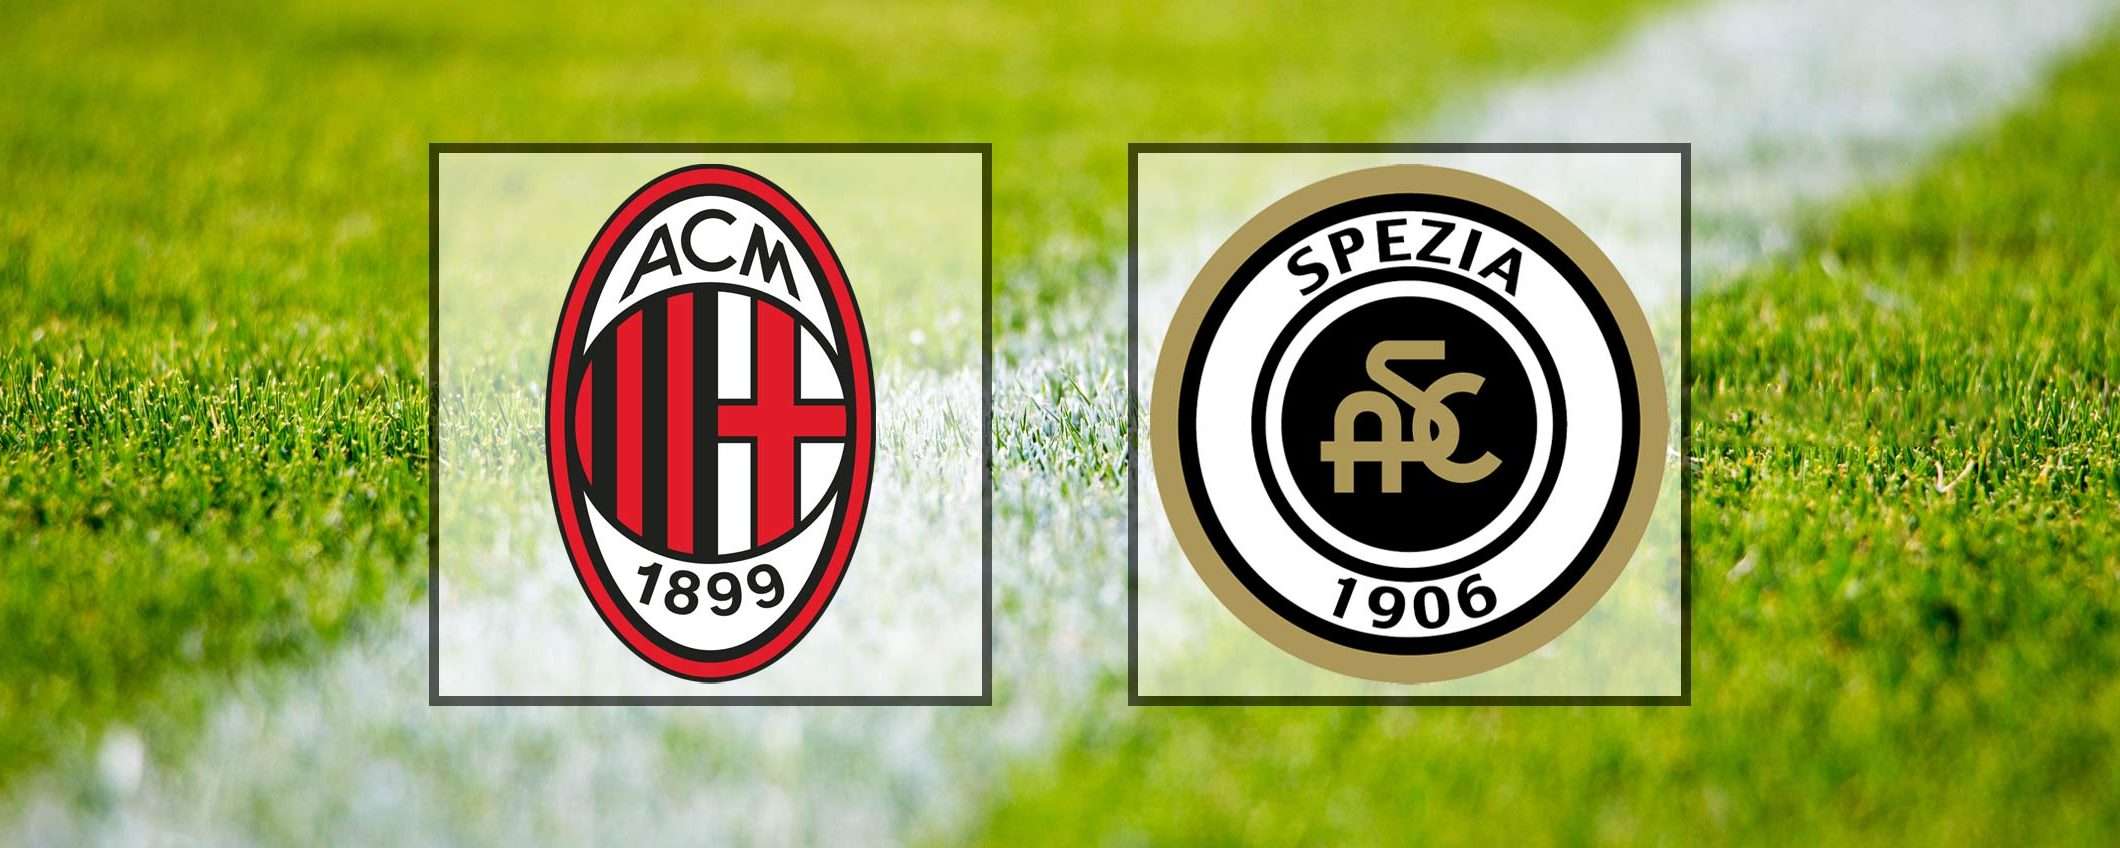 Come vedere Milan-Spezia in streaming (Serie A)